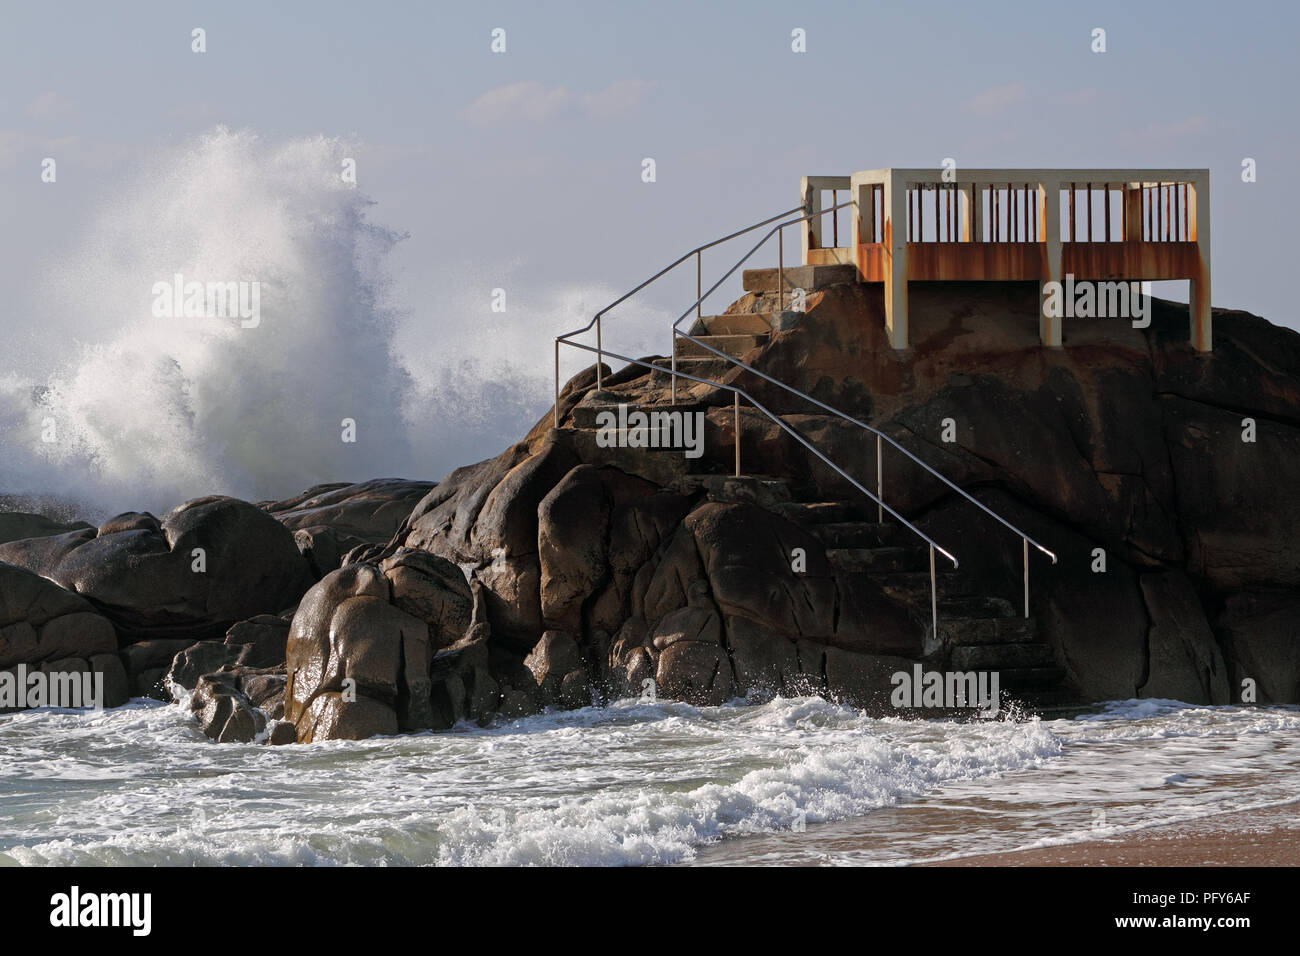 Balcon sur une falaise donnant sur la mer dans un jour de tempête mais ensoleillé avec de grosses vagues, Vila do Conde, Nord du Portugal Banque D'Images